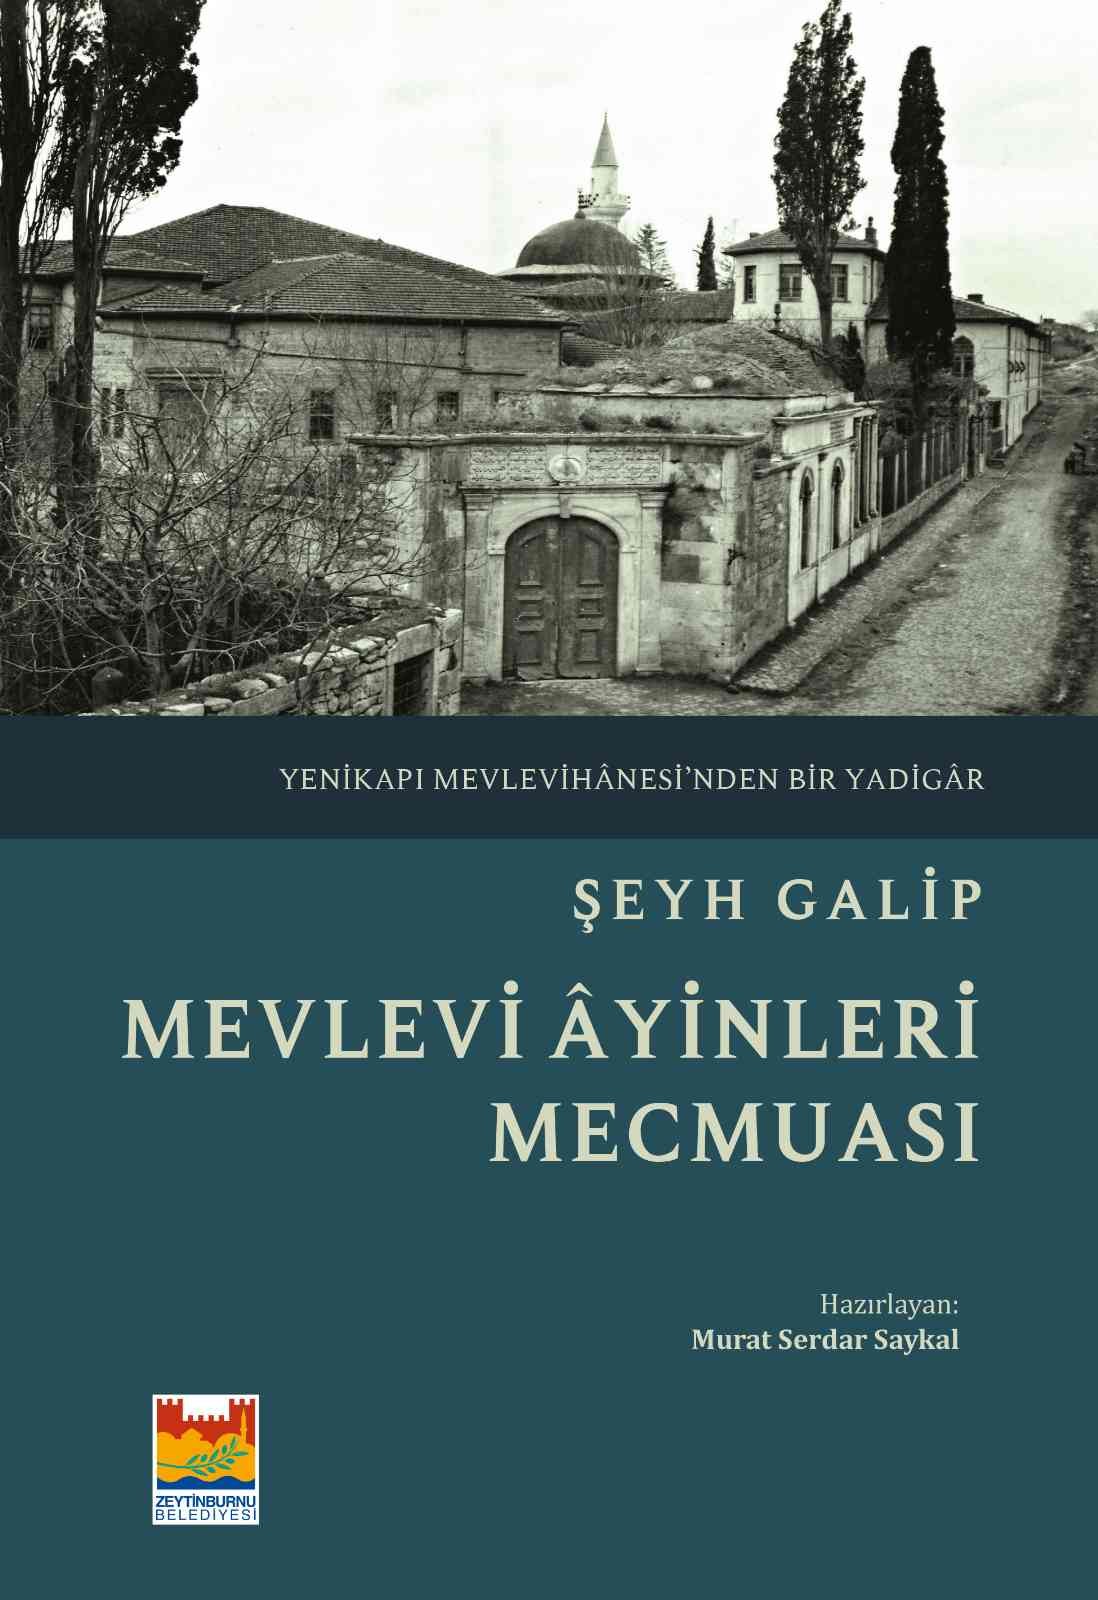 “Mevlevi Âyinleri Mecmuası”, Zeytinburnu Belediyesi tarafından kitaplaştırıldı #istanbul